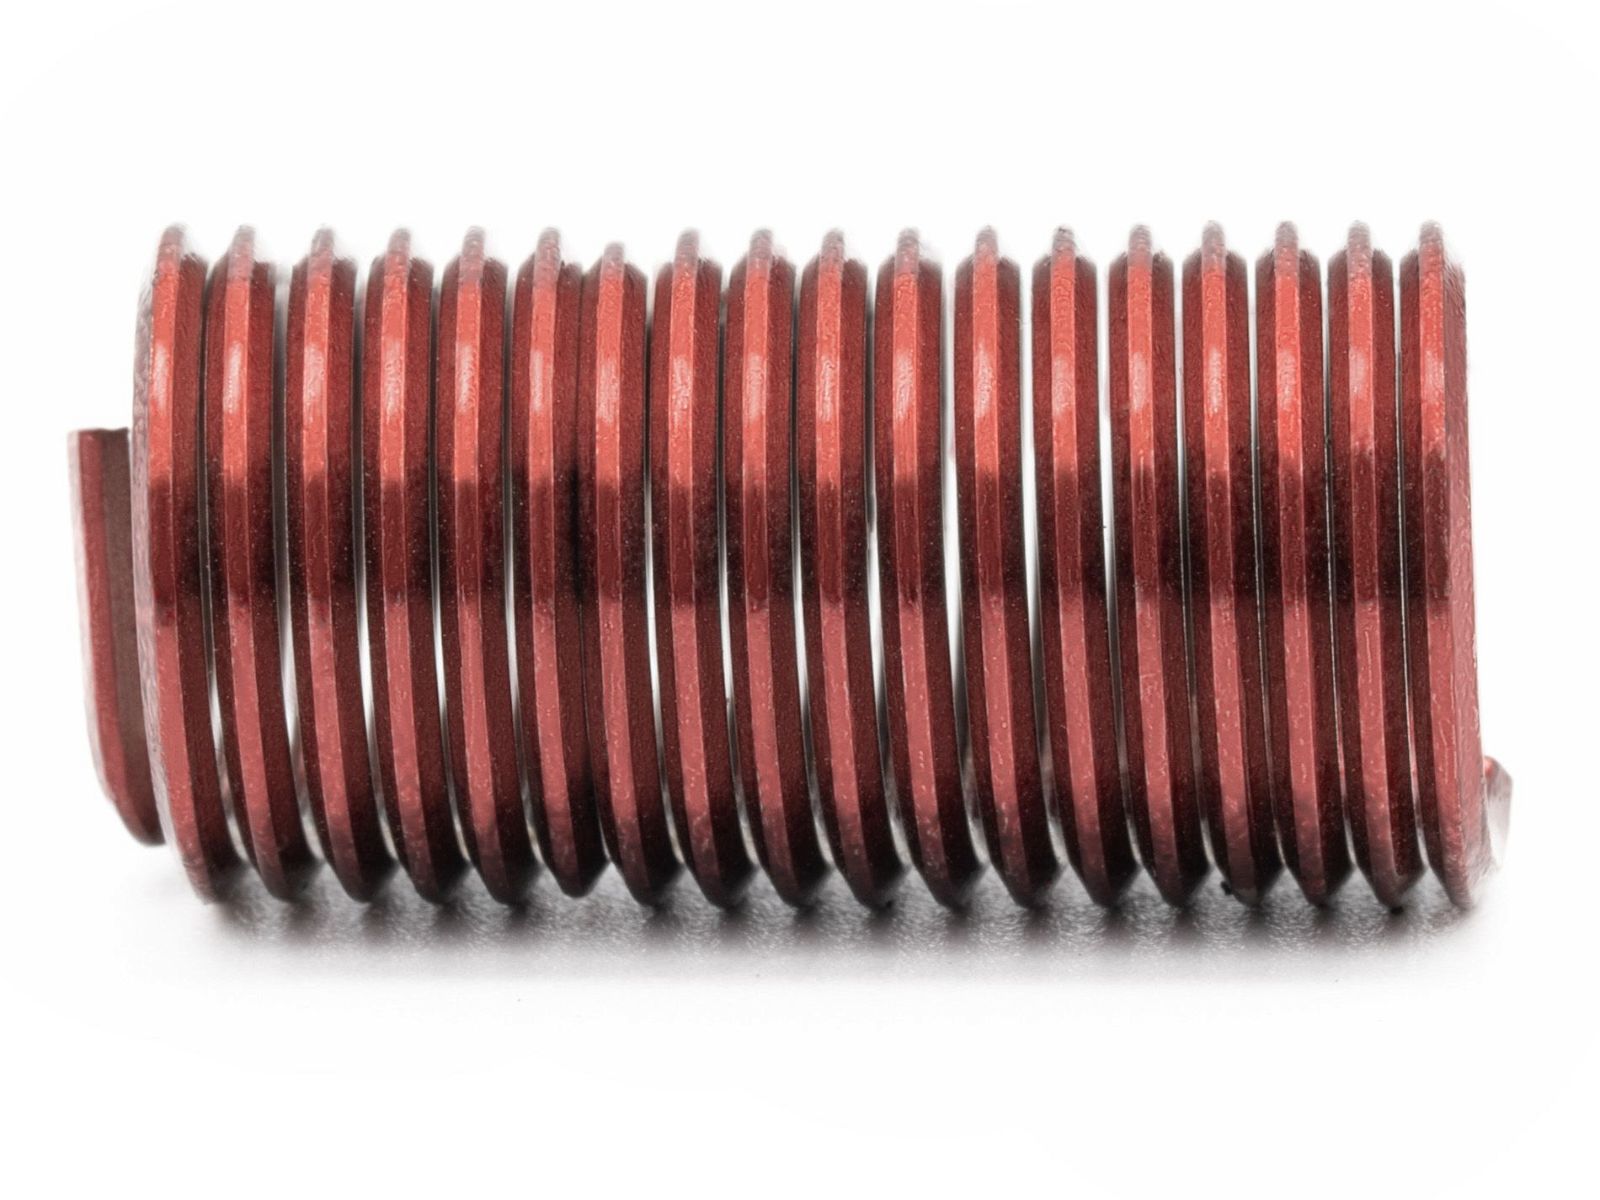 BaerCoil Wire Thread Inserts UNF 1/4 x 28 - 3.0 D (19.05 mm) - screw grip (screw locking) - 100 pcs.